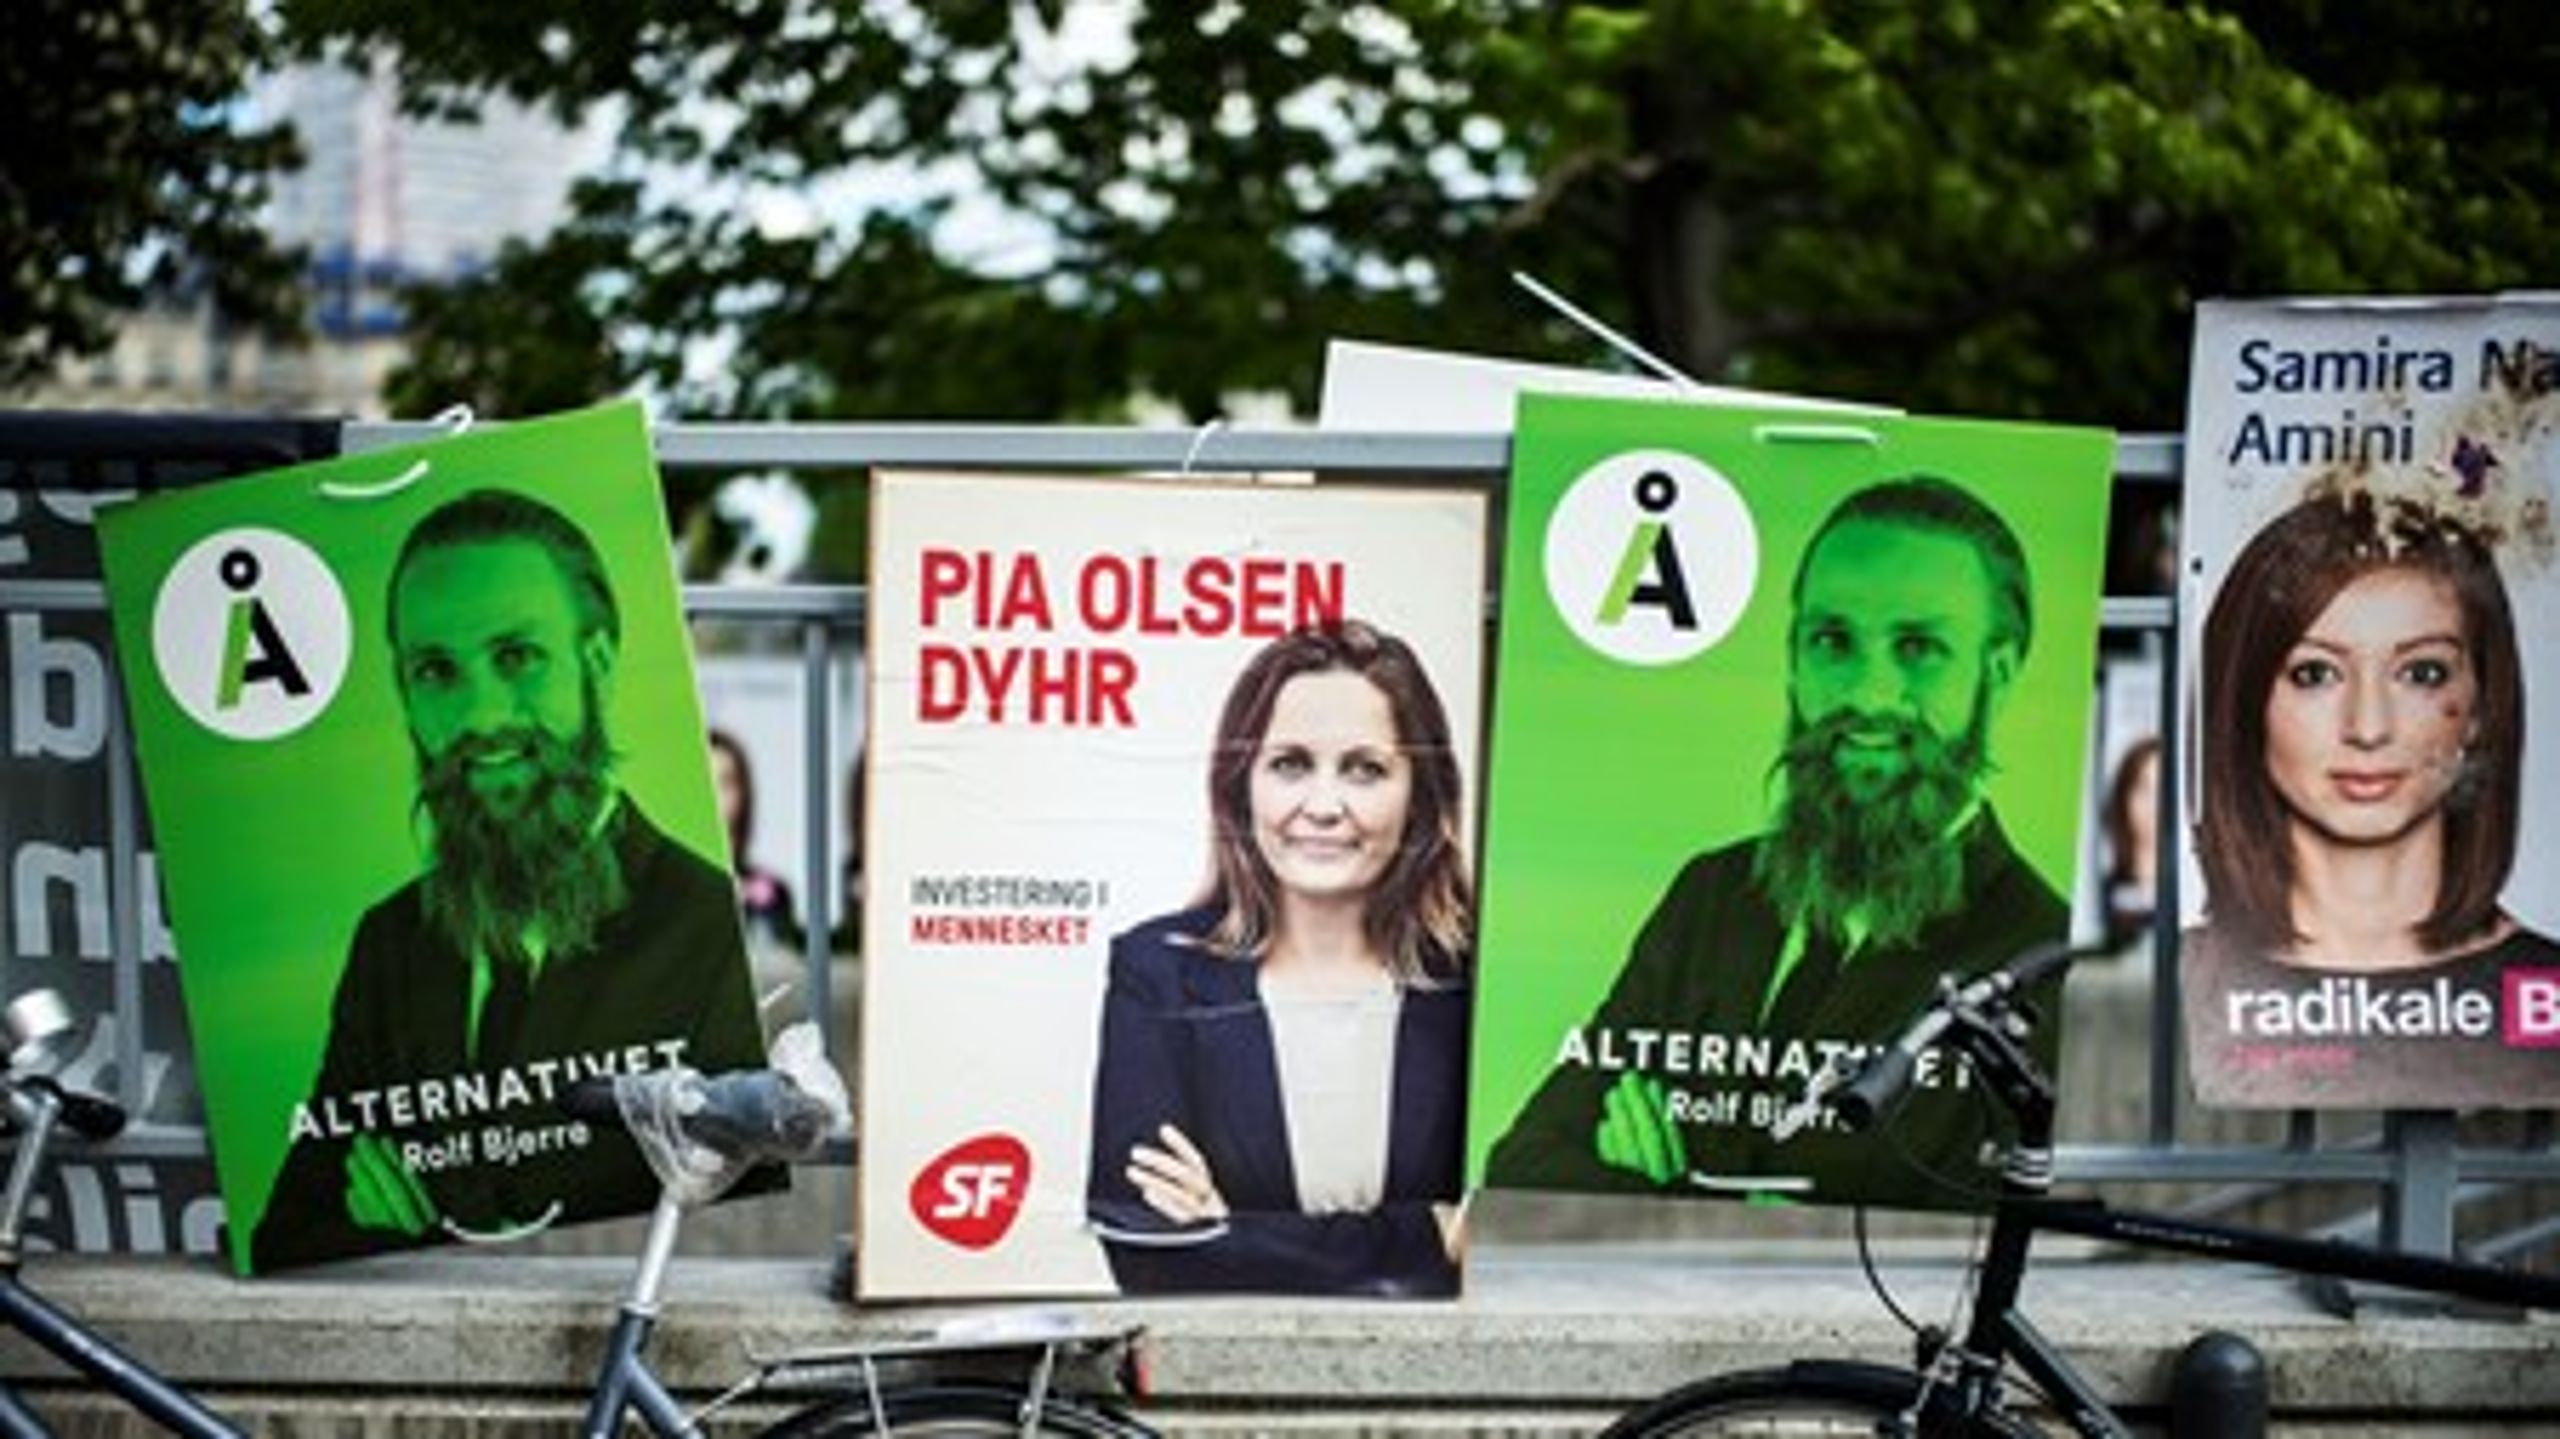 SF blev fravalgt af de offentligt ansatte ved valget i juni, mens&nbsp;Alternativet blev større end de Radikale. Dansk Folkeparti er nu det næststørste parti blandt de offentligt ansatte, viser Risbjerg-analyse.